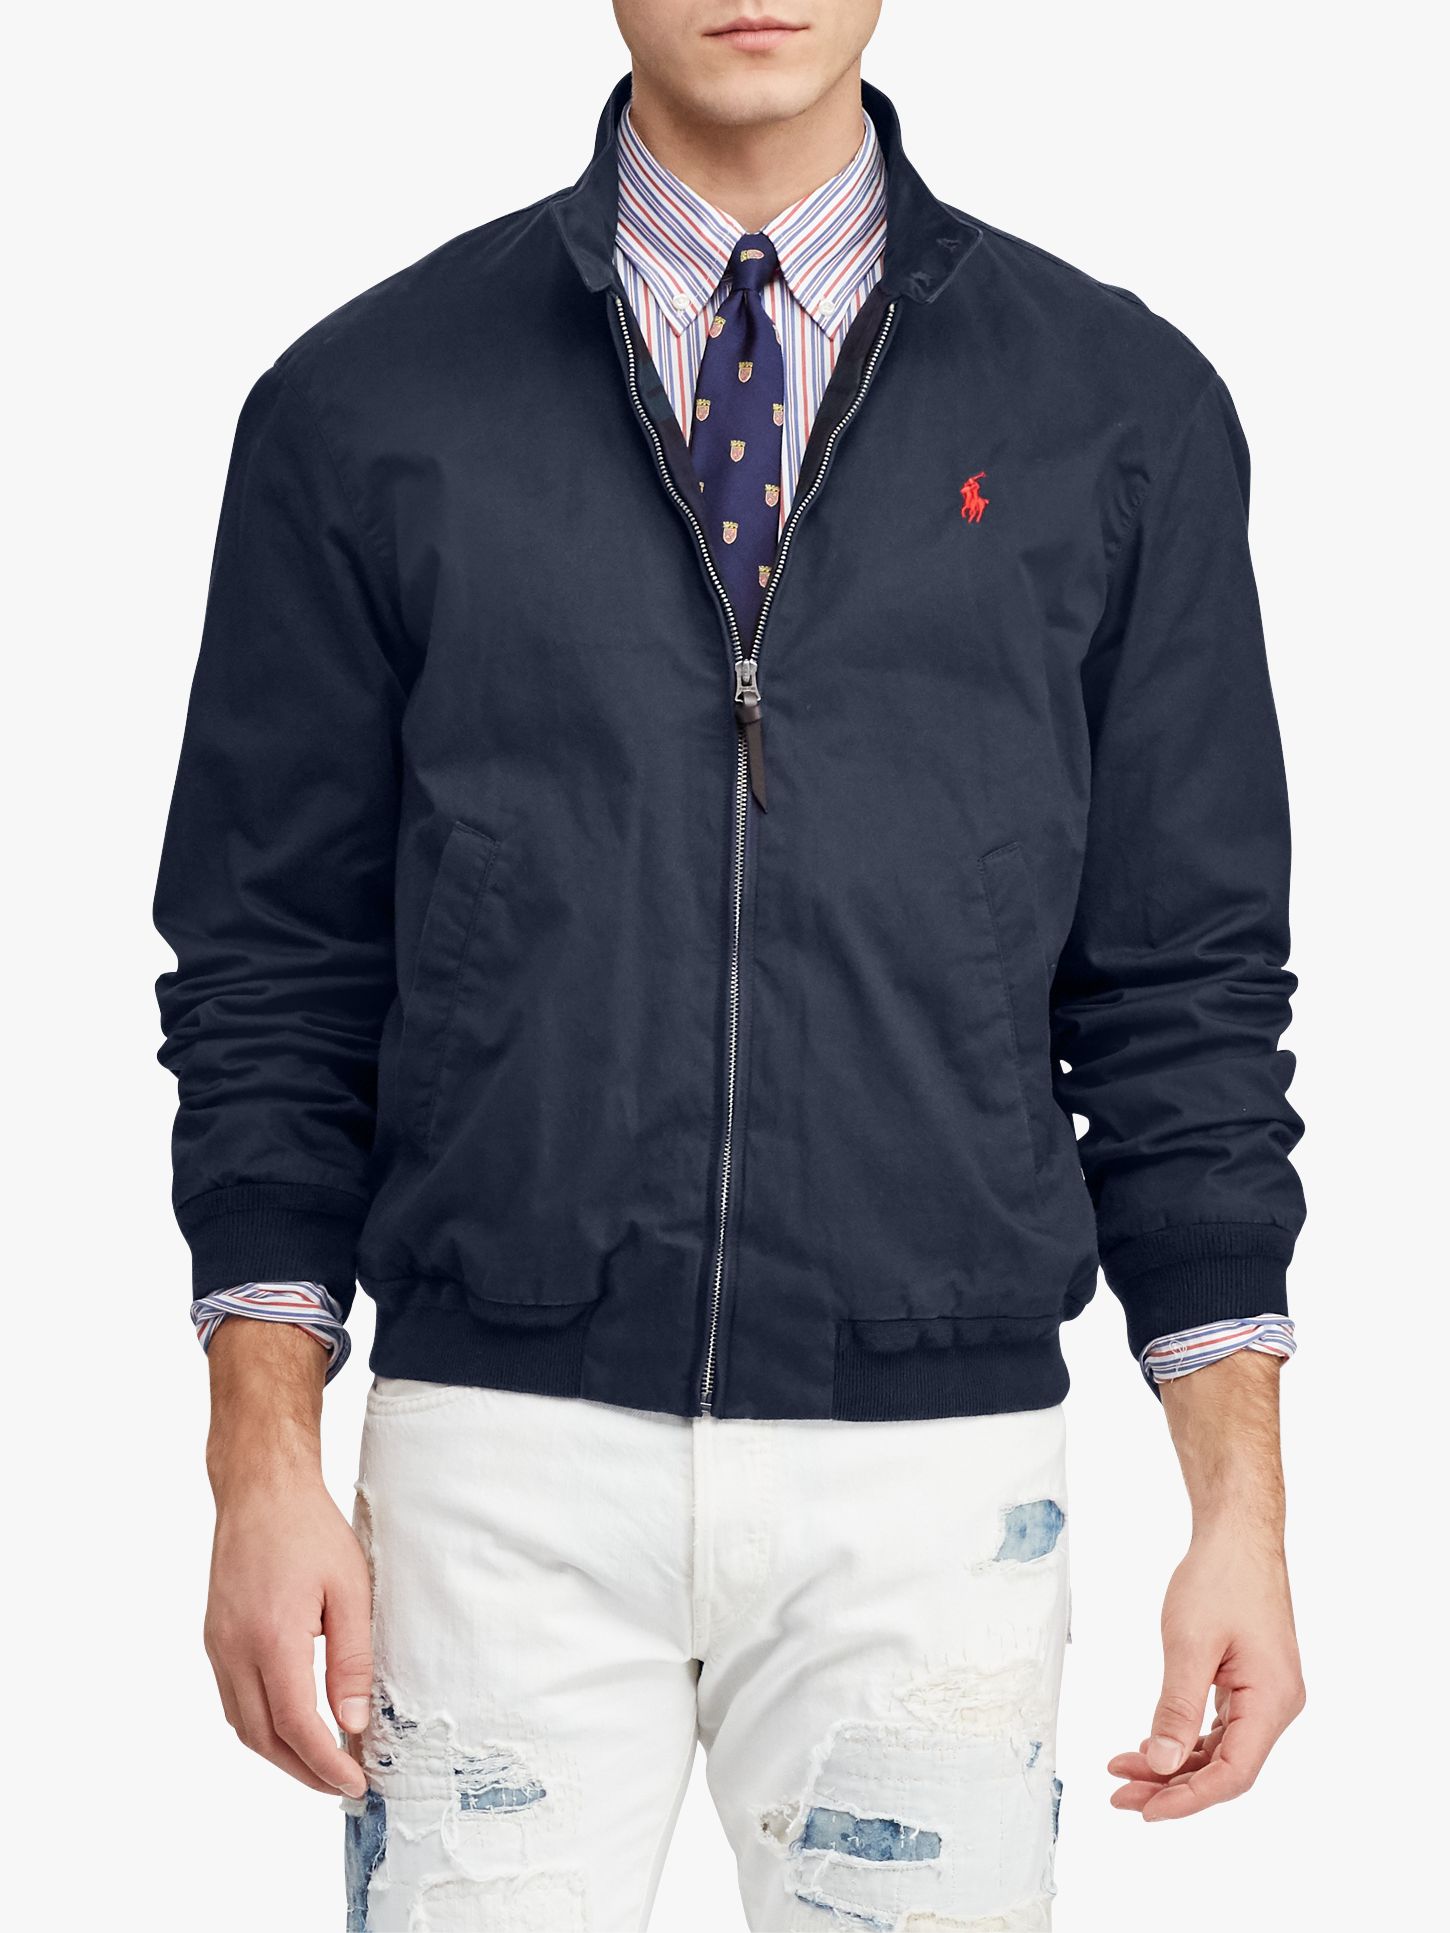 polo ralph lauren navy jacket